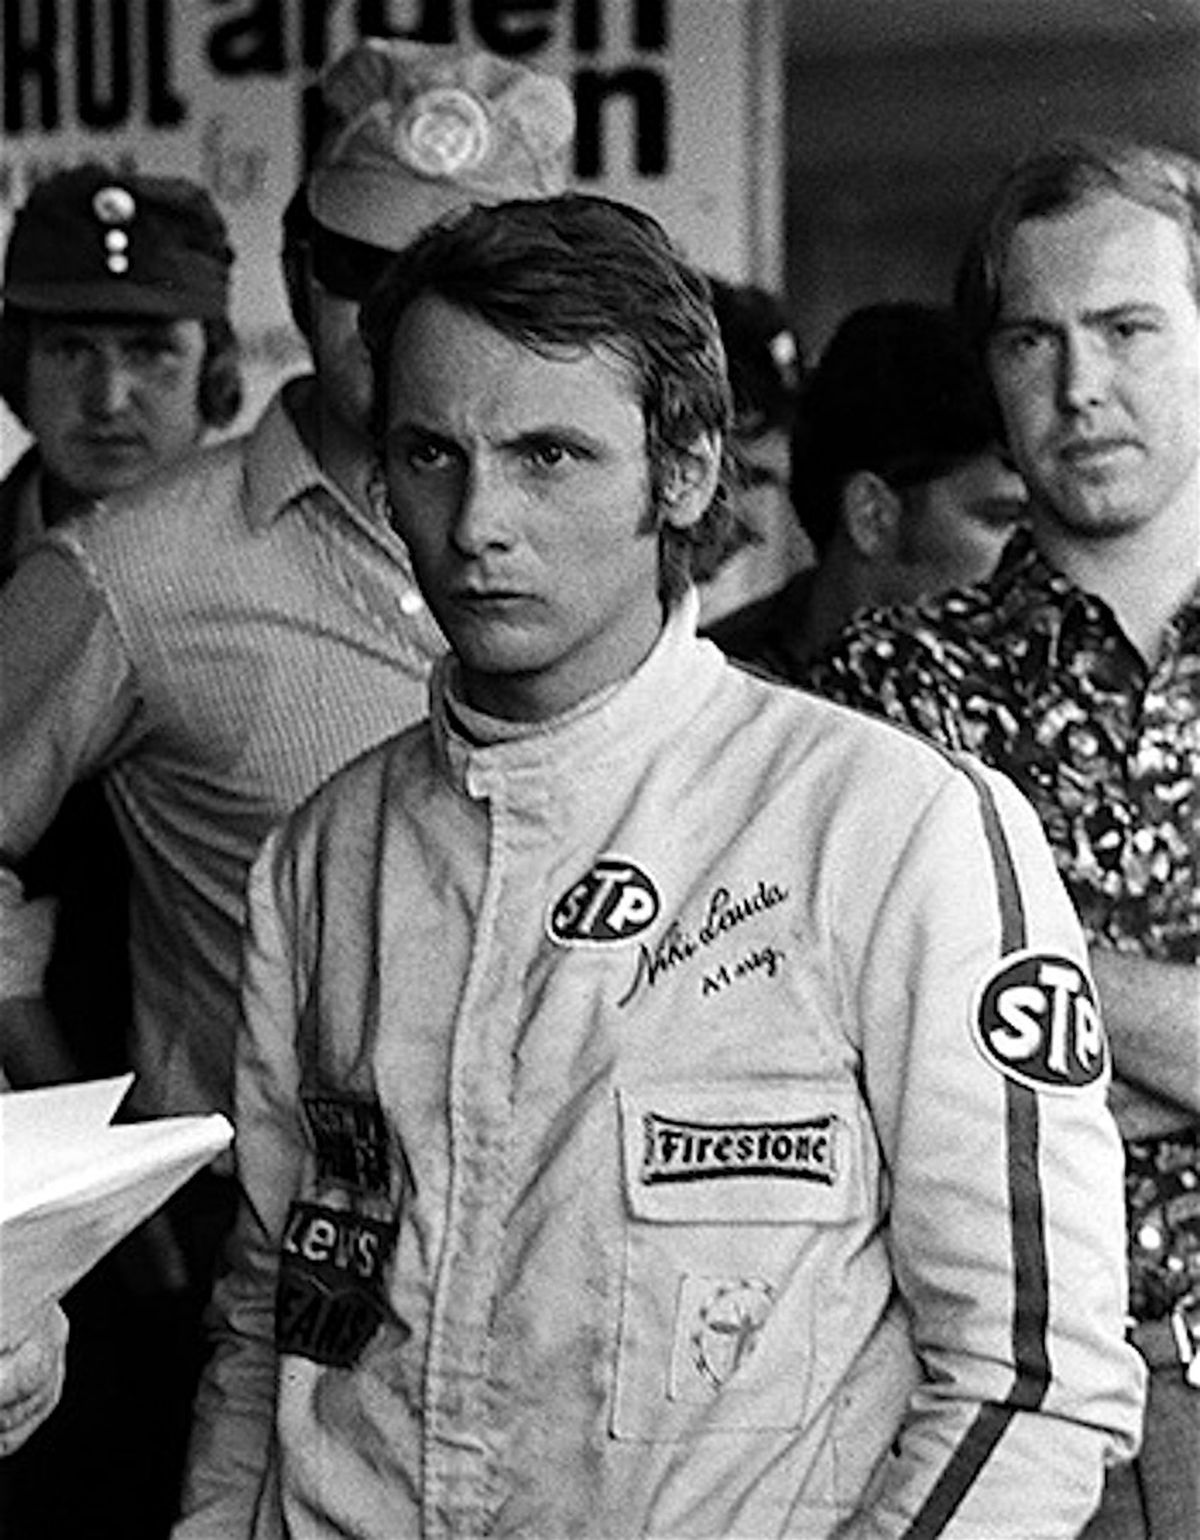 El domingo 15 de agosto de 1971, Niki disputó su primera carrera de Fórmula 1. Fue en el GP de su país, en el trazado de Österreichring, y lo hizo con el March /11-Cosworth N° 26. Tras largar desde la 21ª y penúltima posición, abandonó luego de 20 vueltas por la rotura de la dirección.